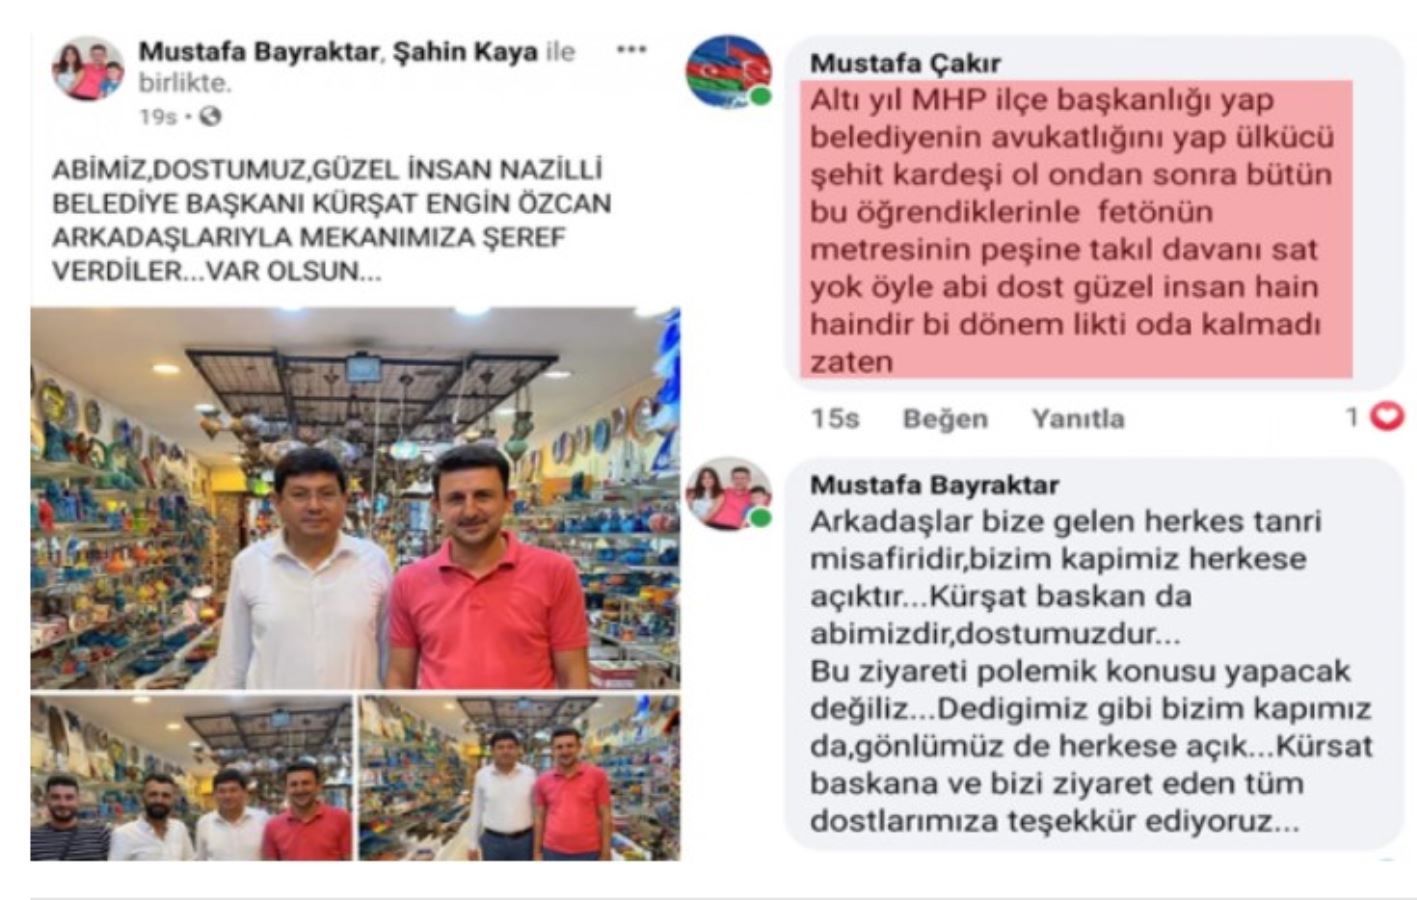 MHP'li isimden Akşener'e skandal sözler! İYİ Parti'den çok sert yanıt